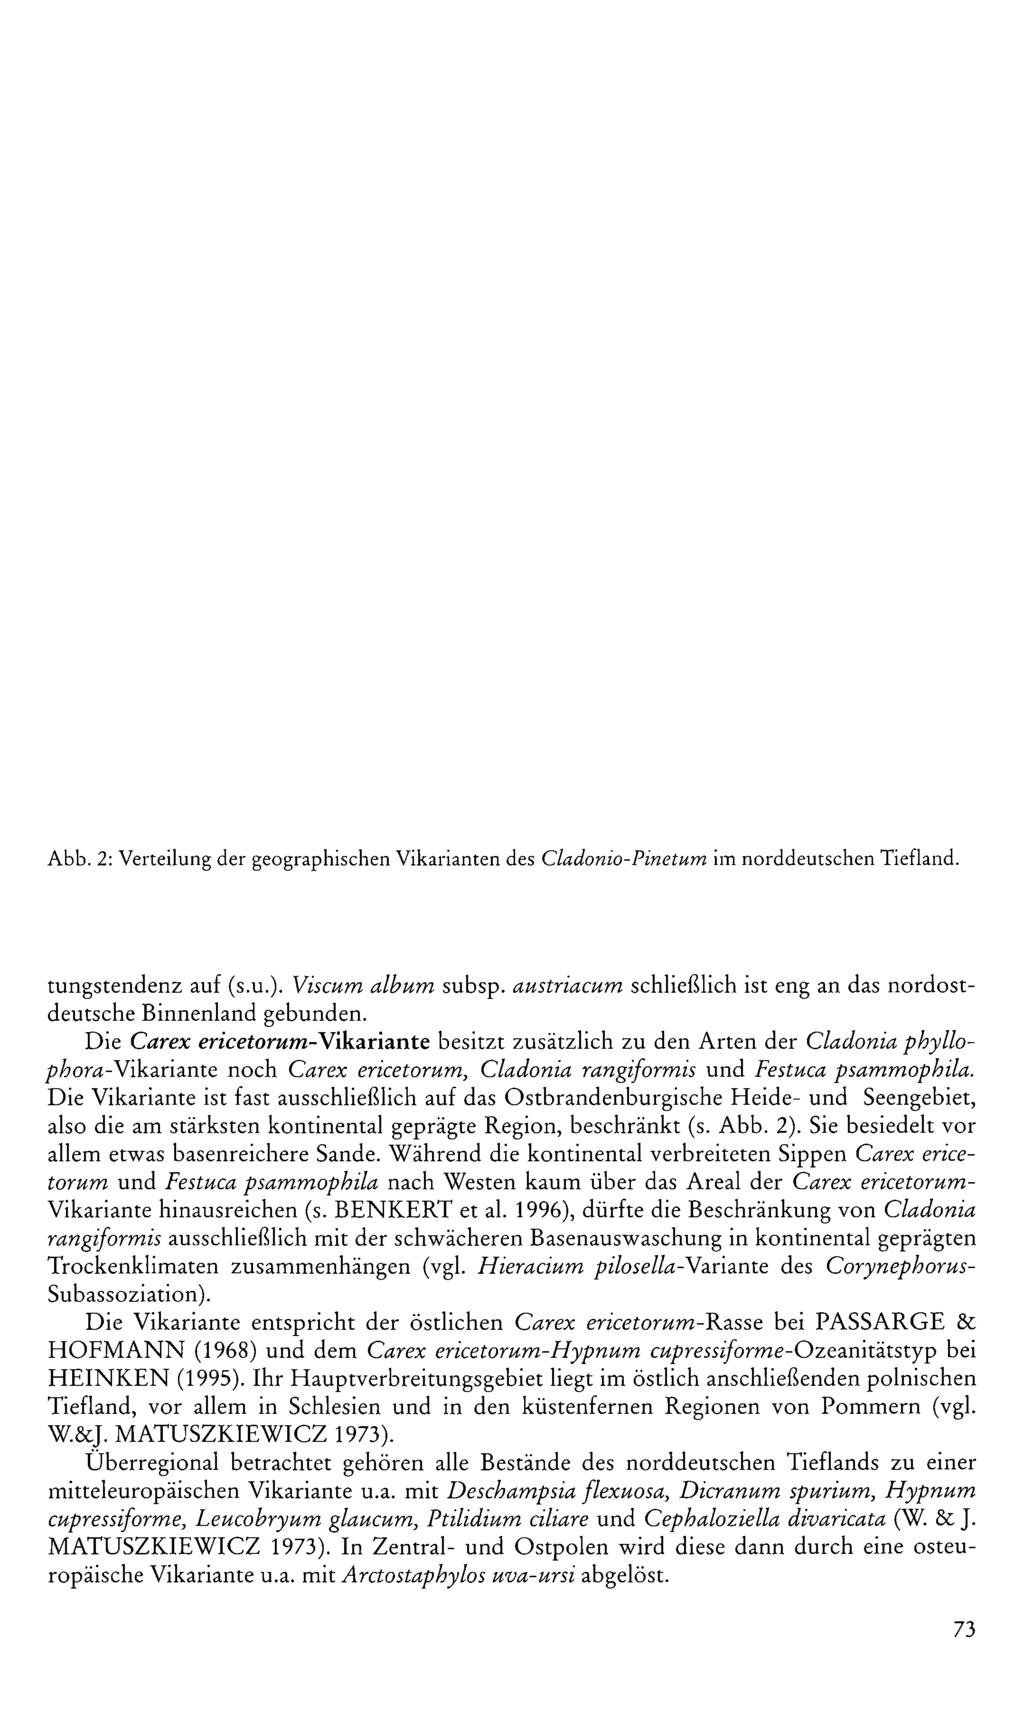 Abb. 2: Verteilung der geographischen Vikarianten des C ladonio-pinetum im norddeutschen Tiefland. tungstendenz auf (s.u.). Viscum album subsp.